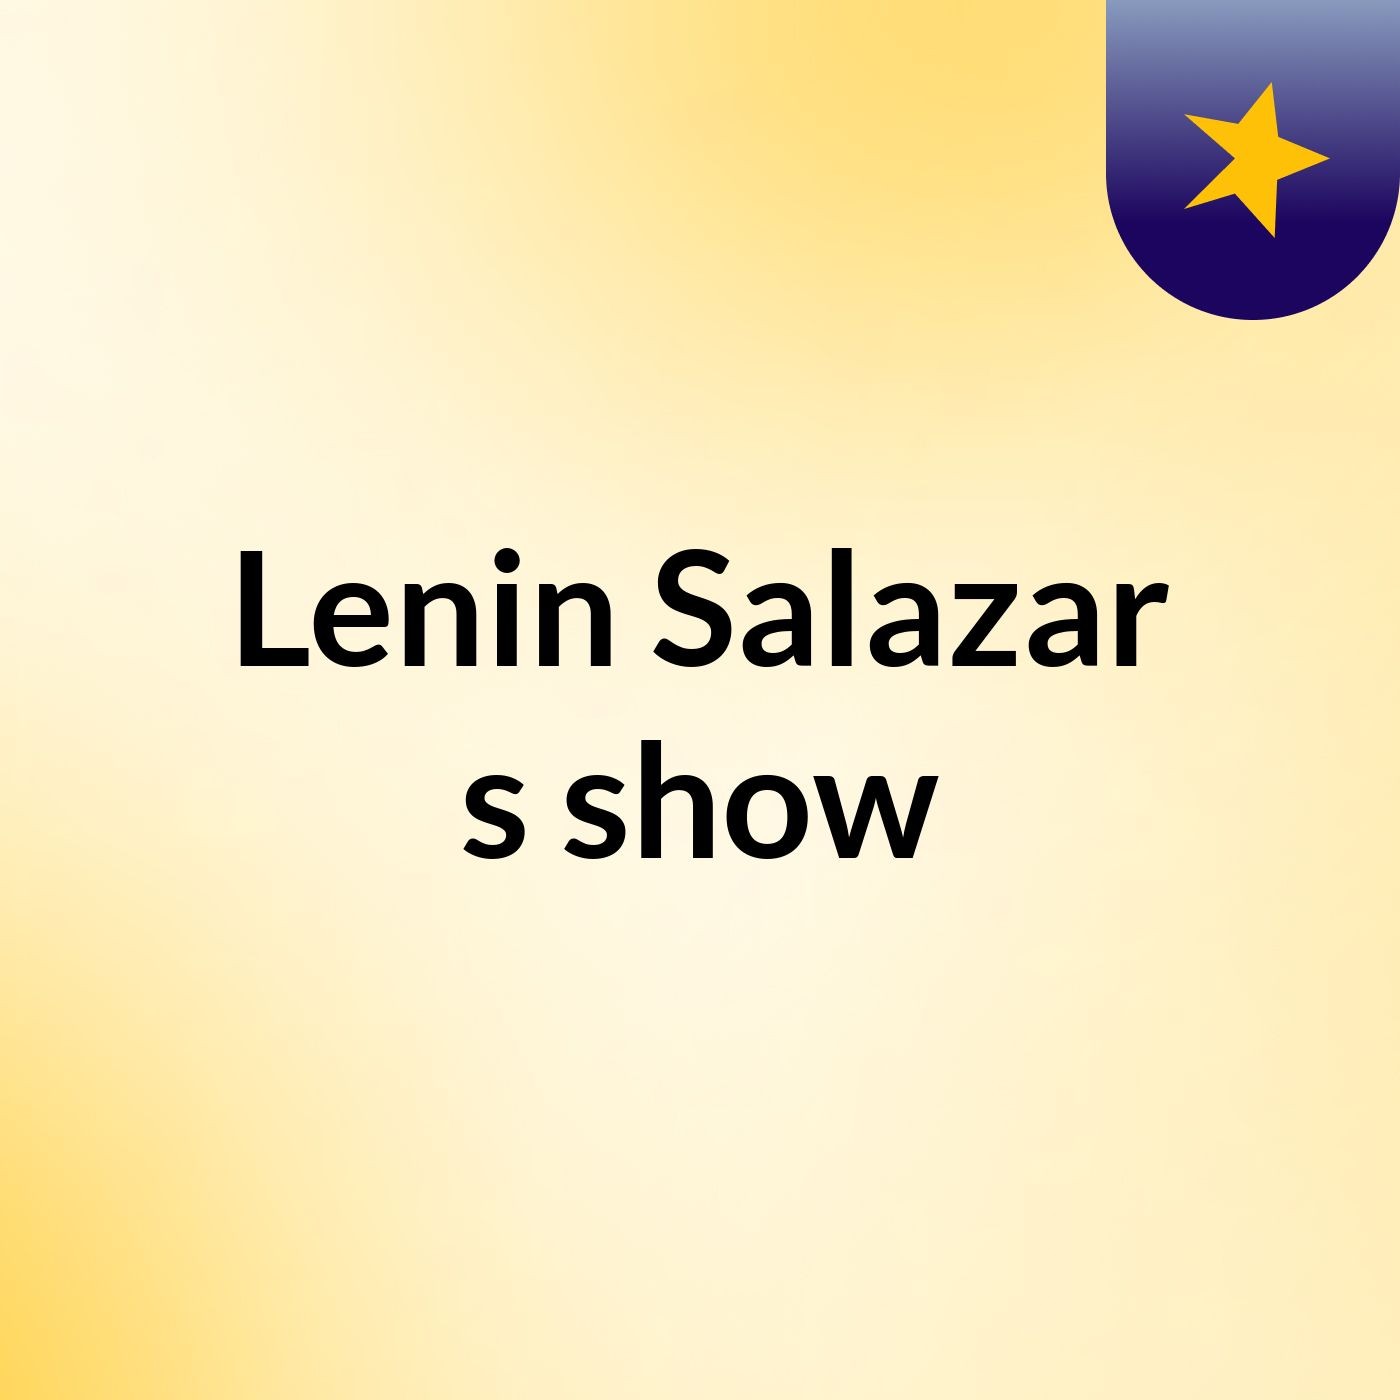 Lenin.Salazar